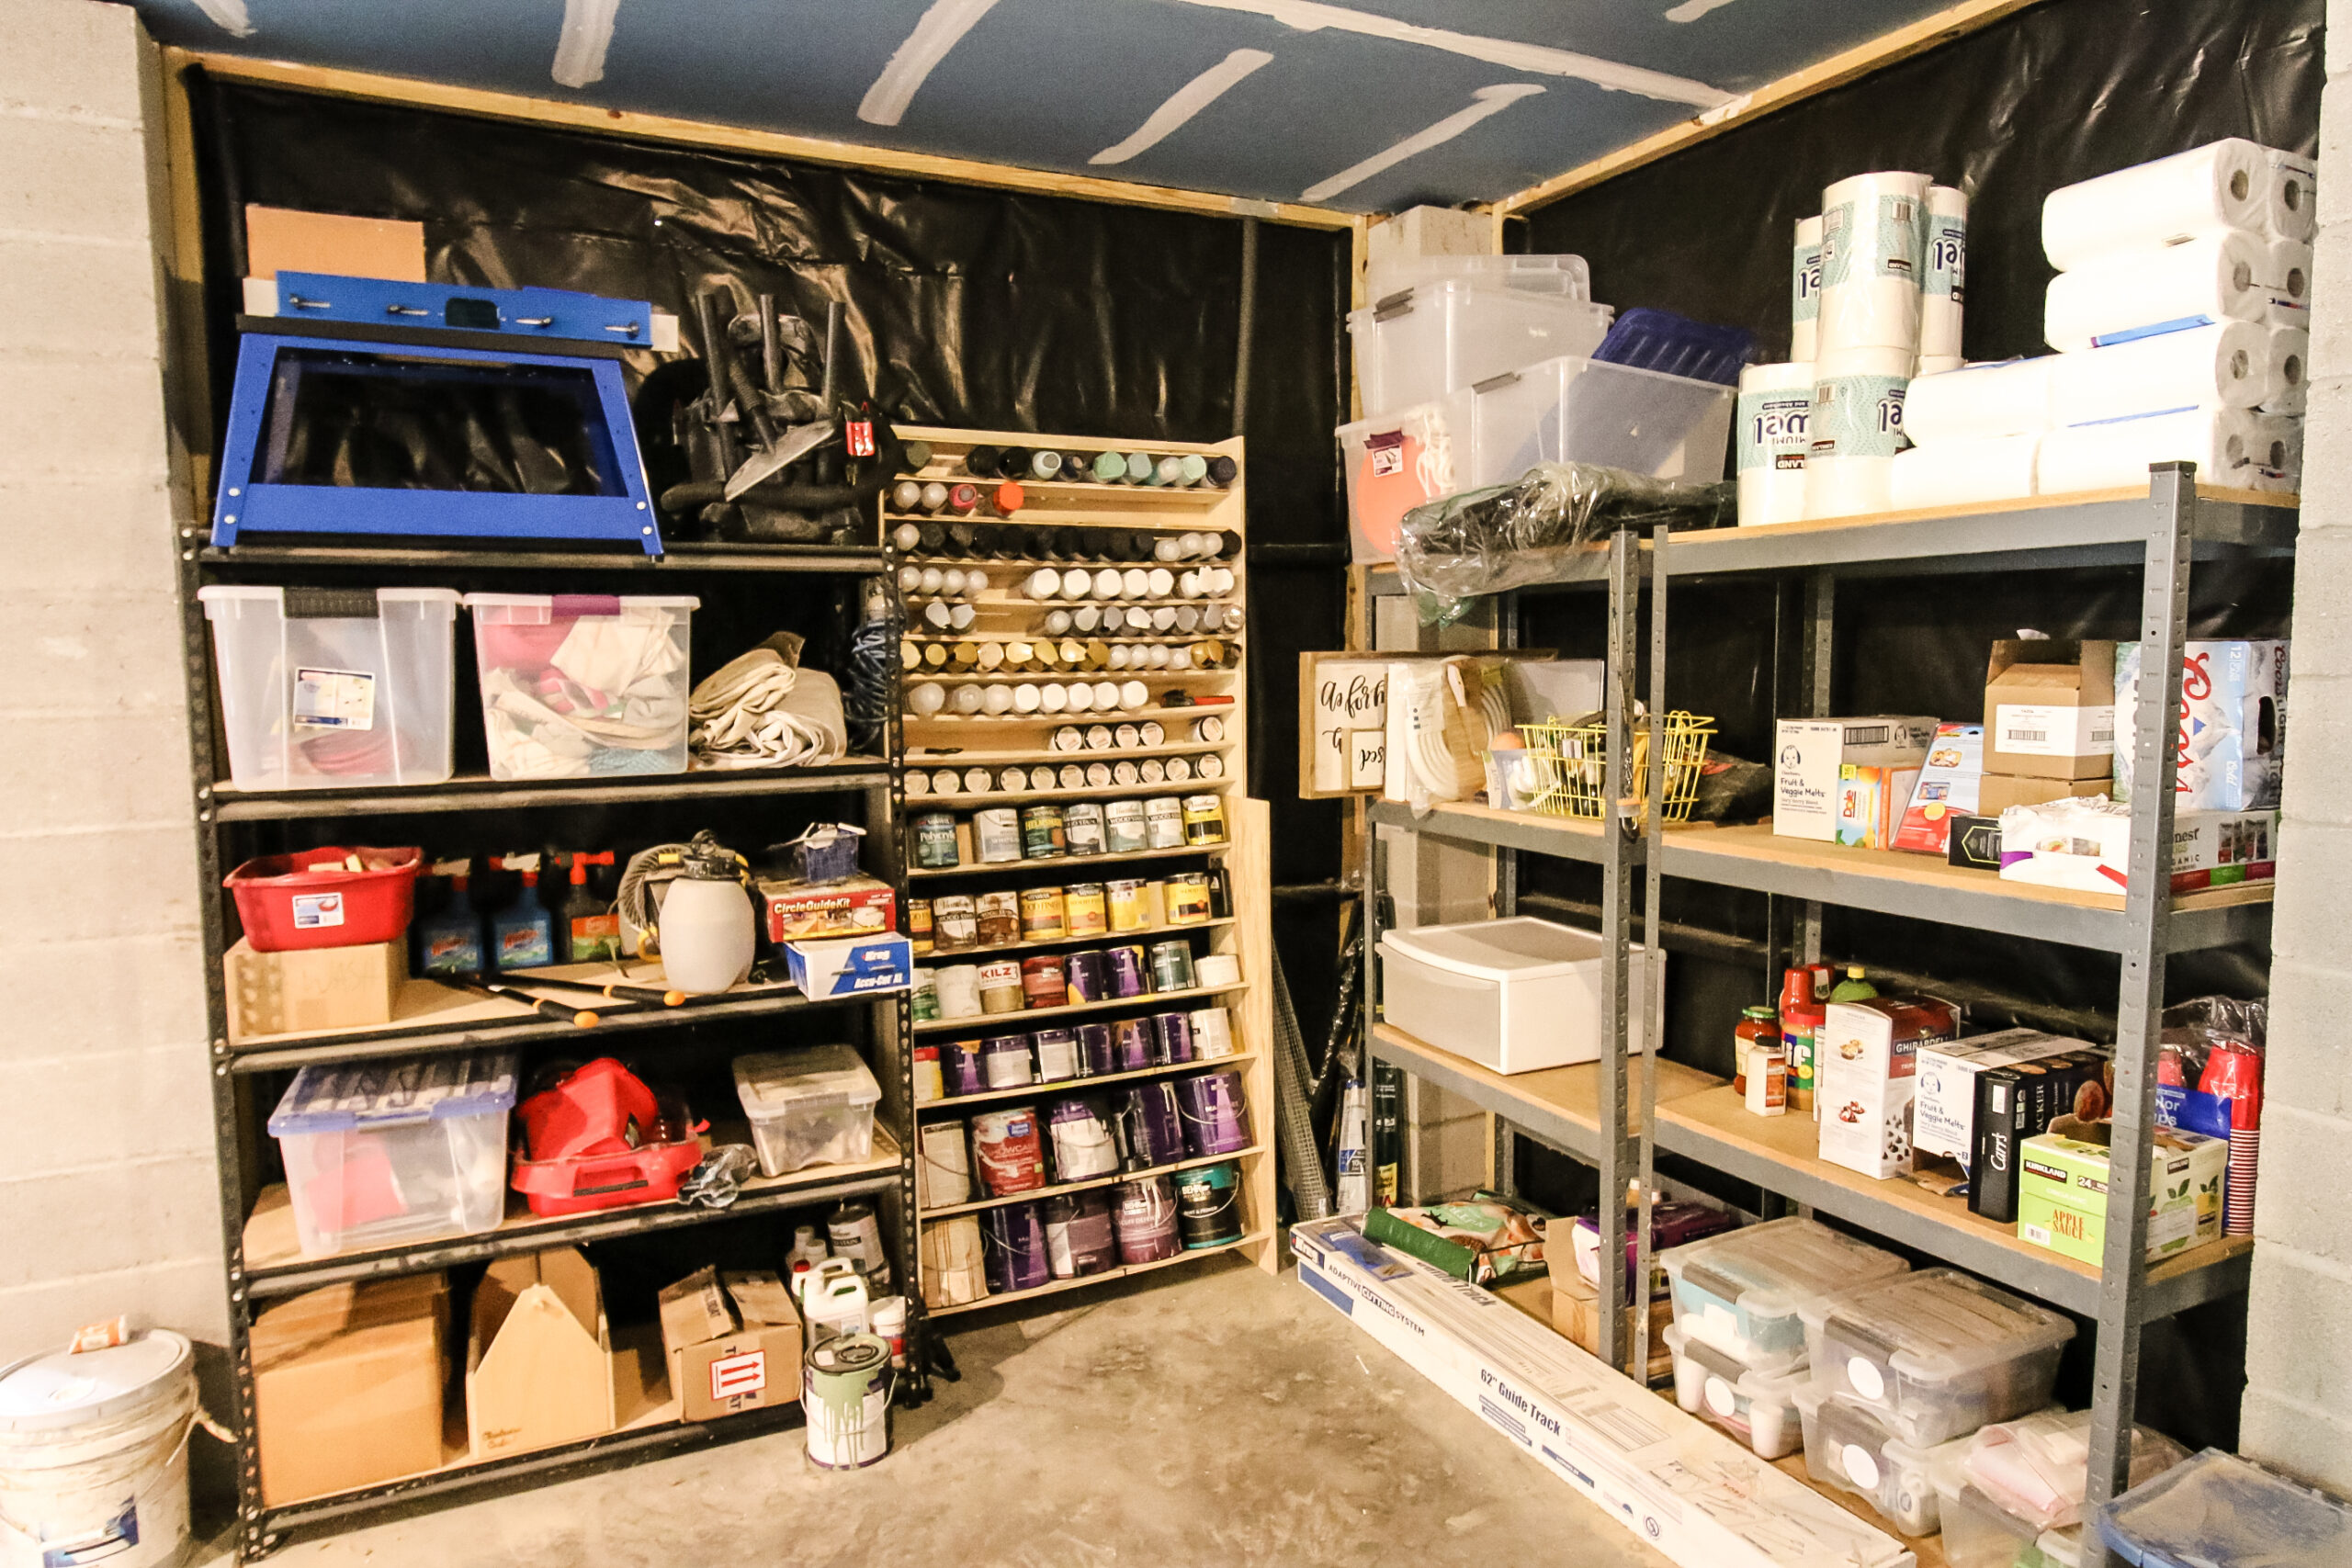 Garage Storage Organisation Ideas